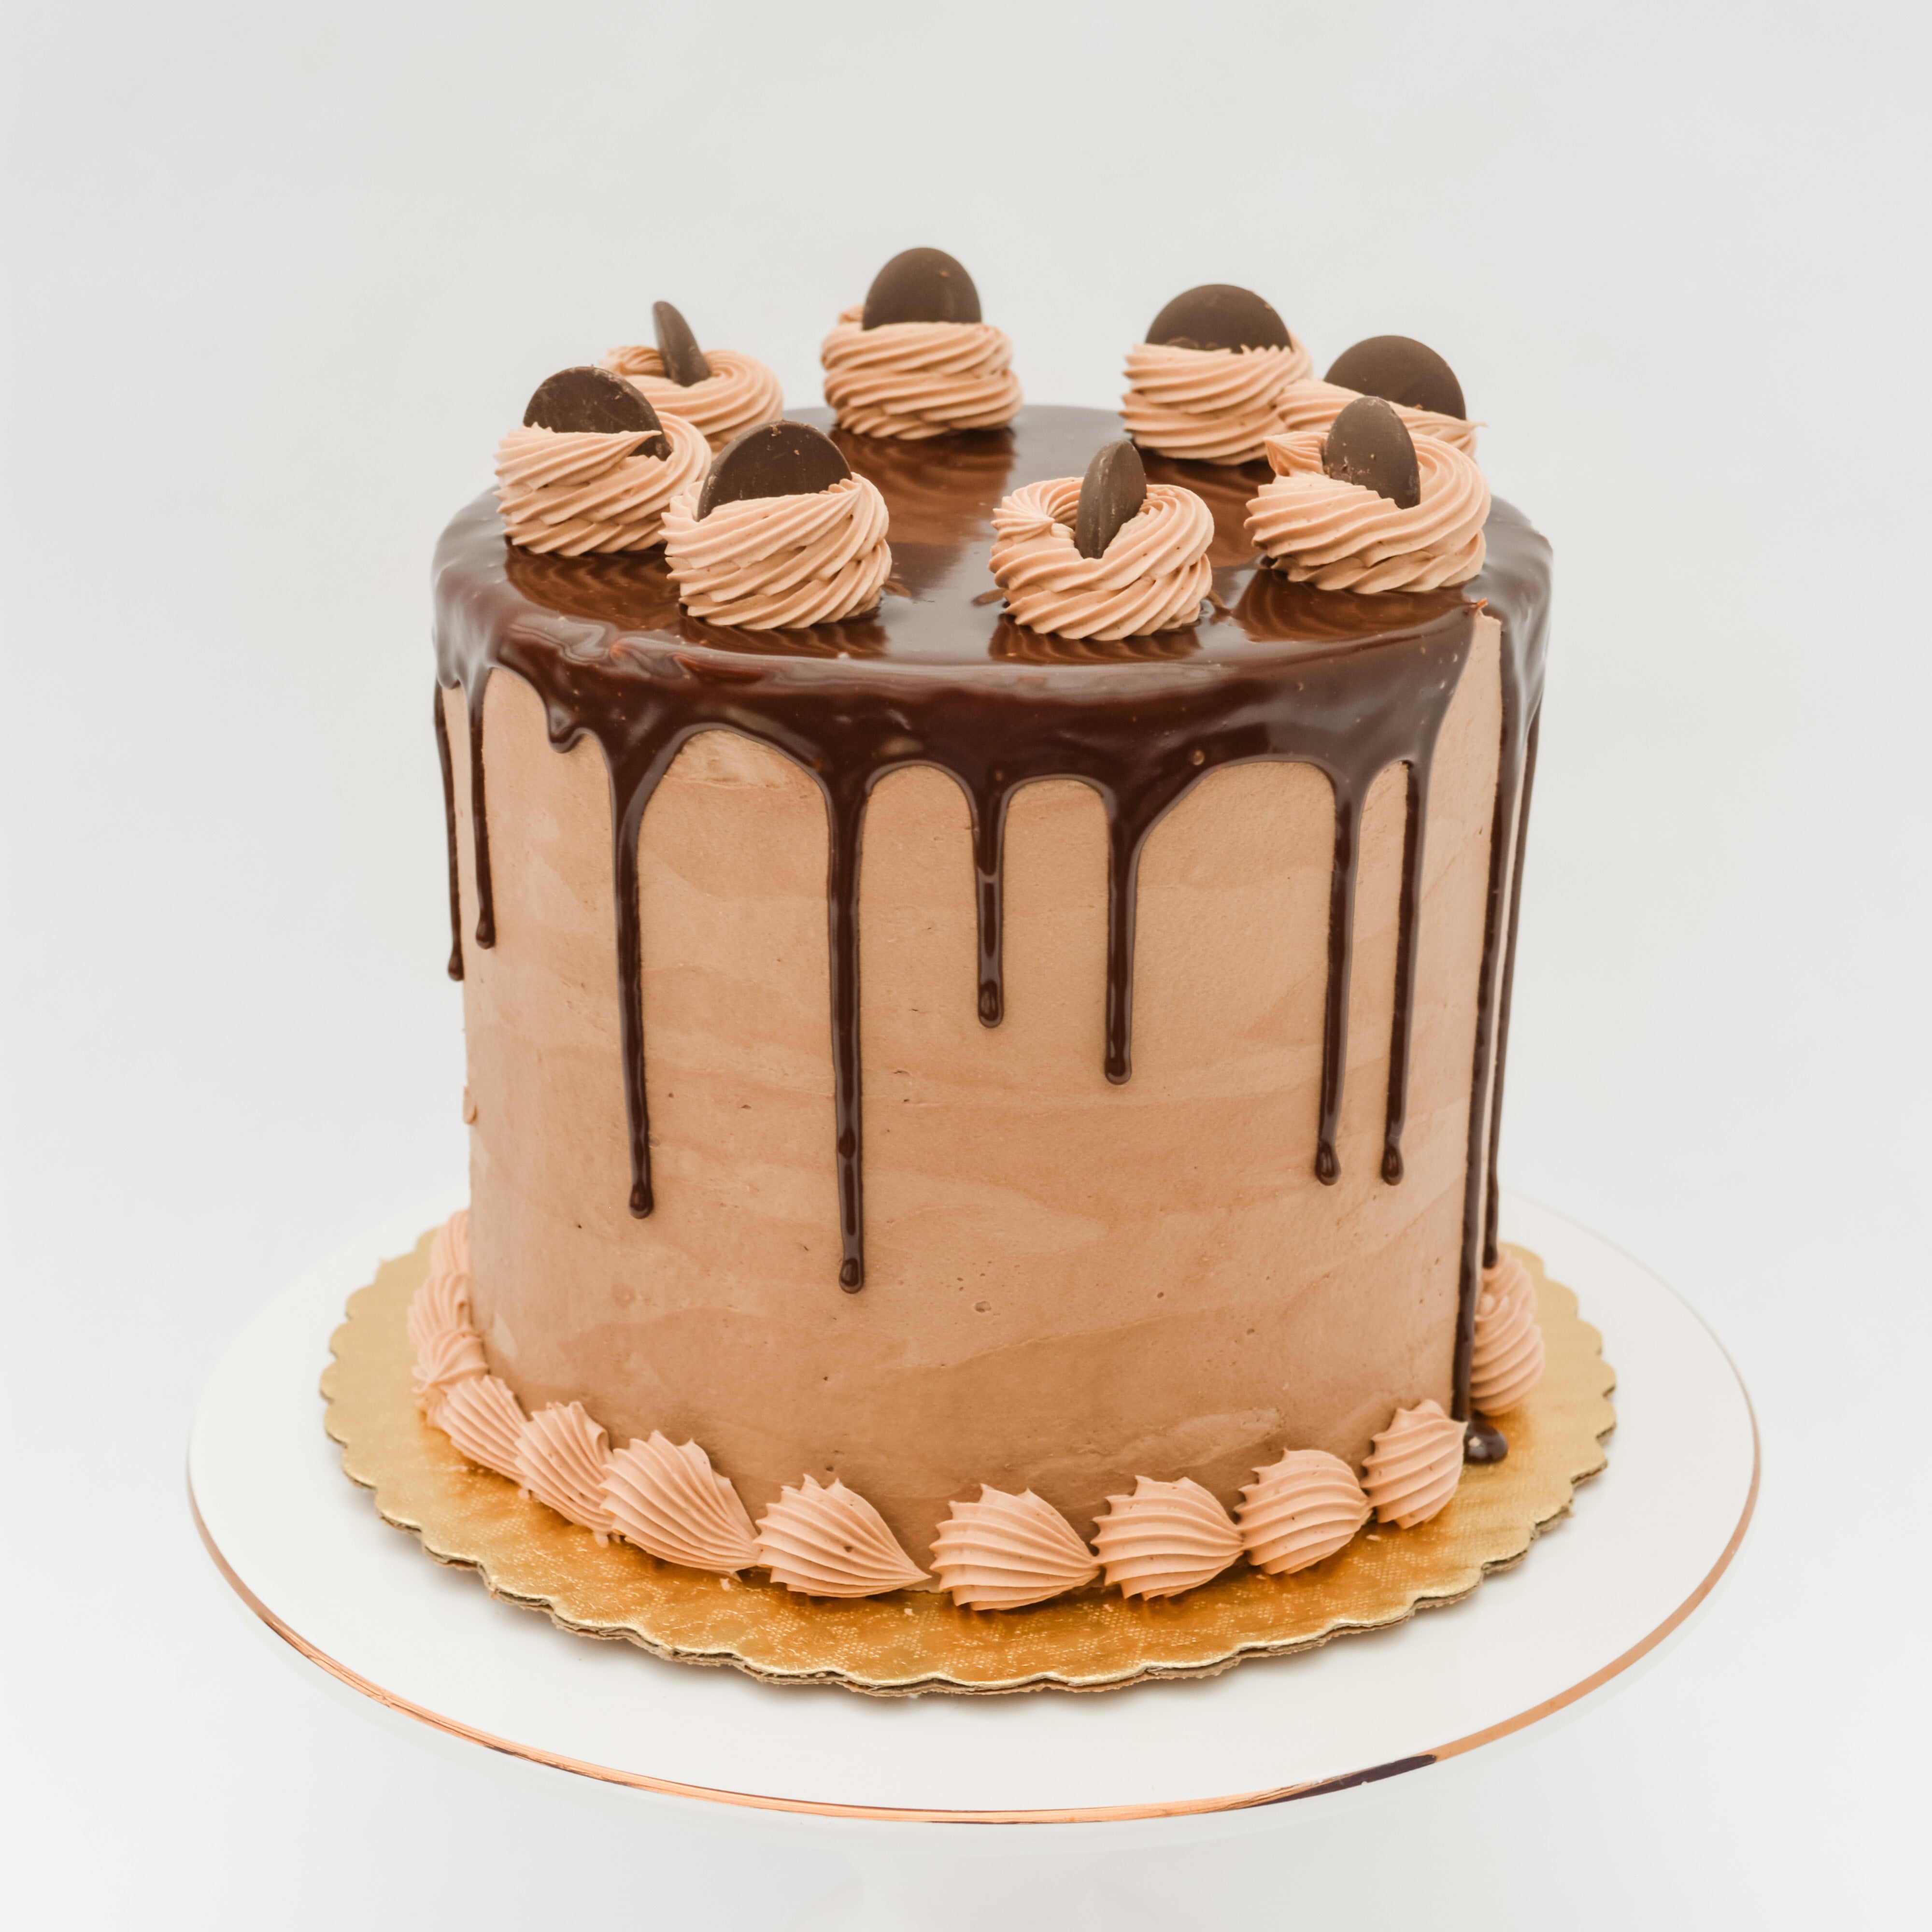 Order Eggless Chocolate Truffle Cake